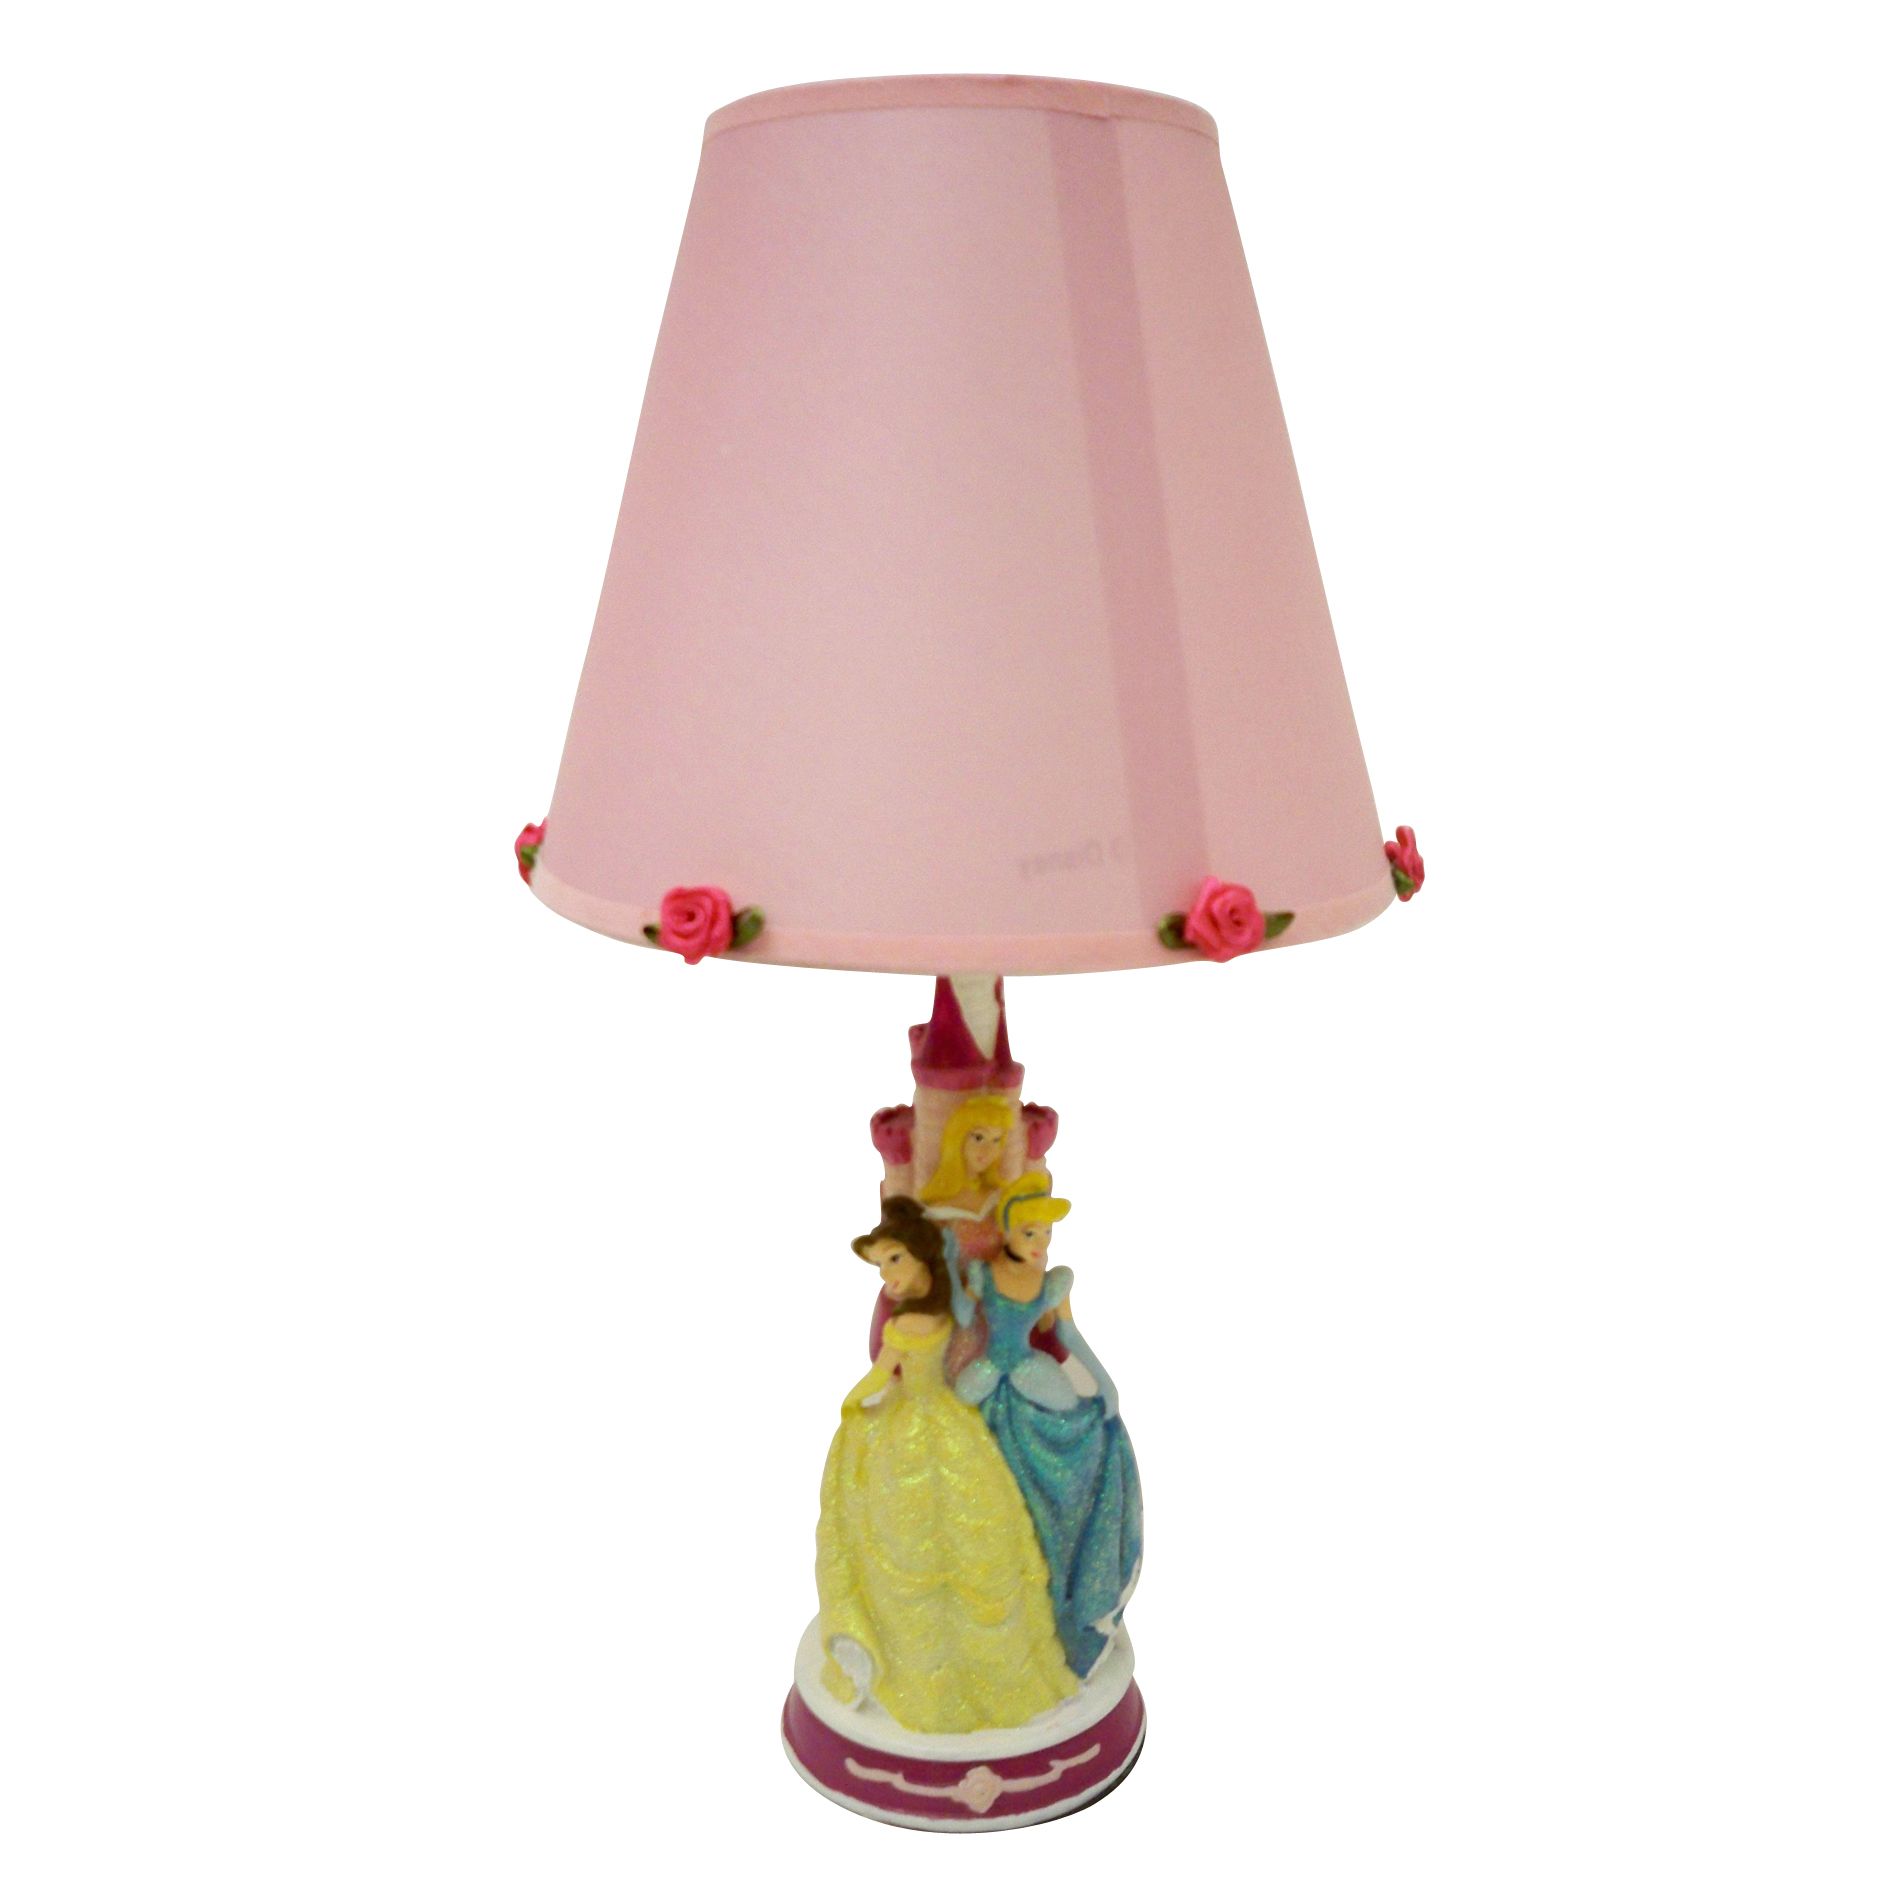 Disney Princess Table Lamp Home Home Decor Lighting